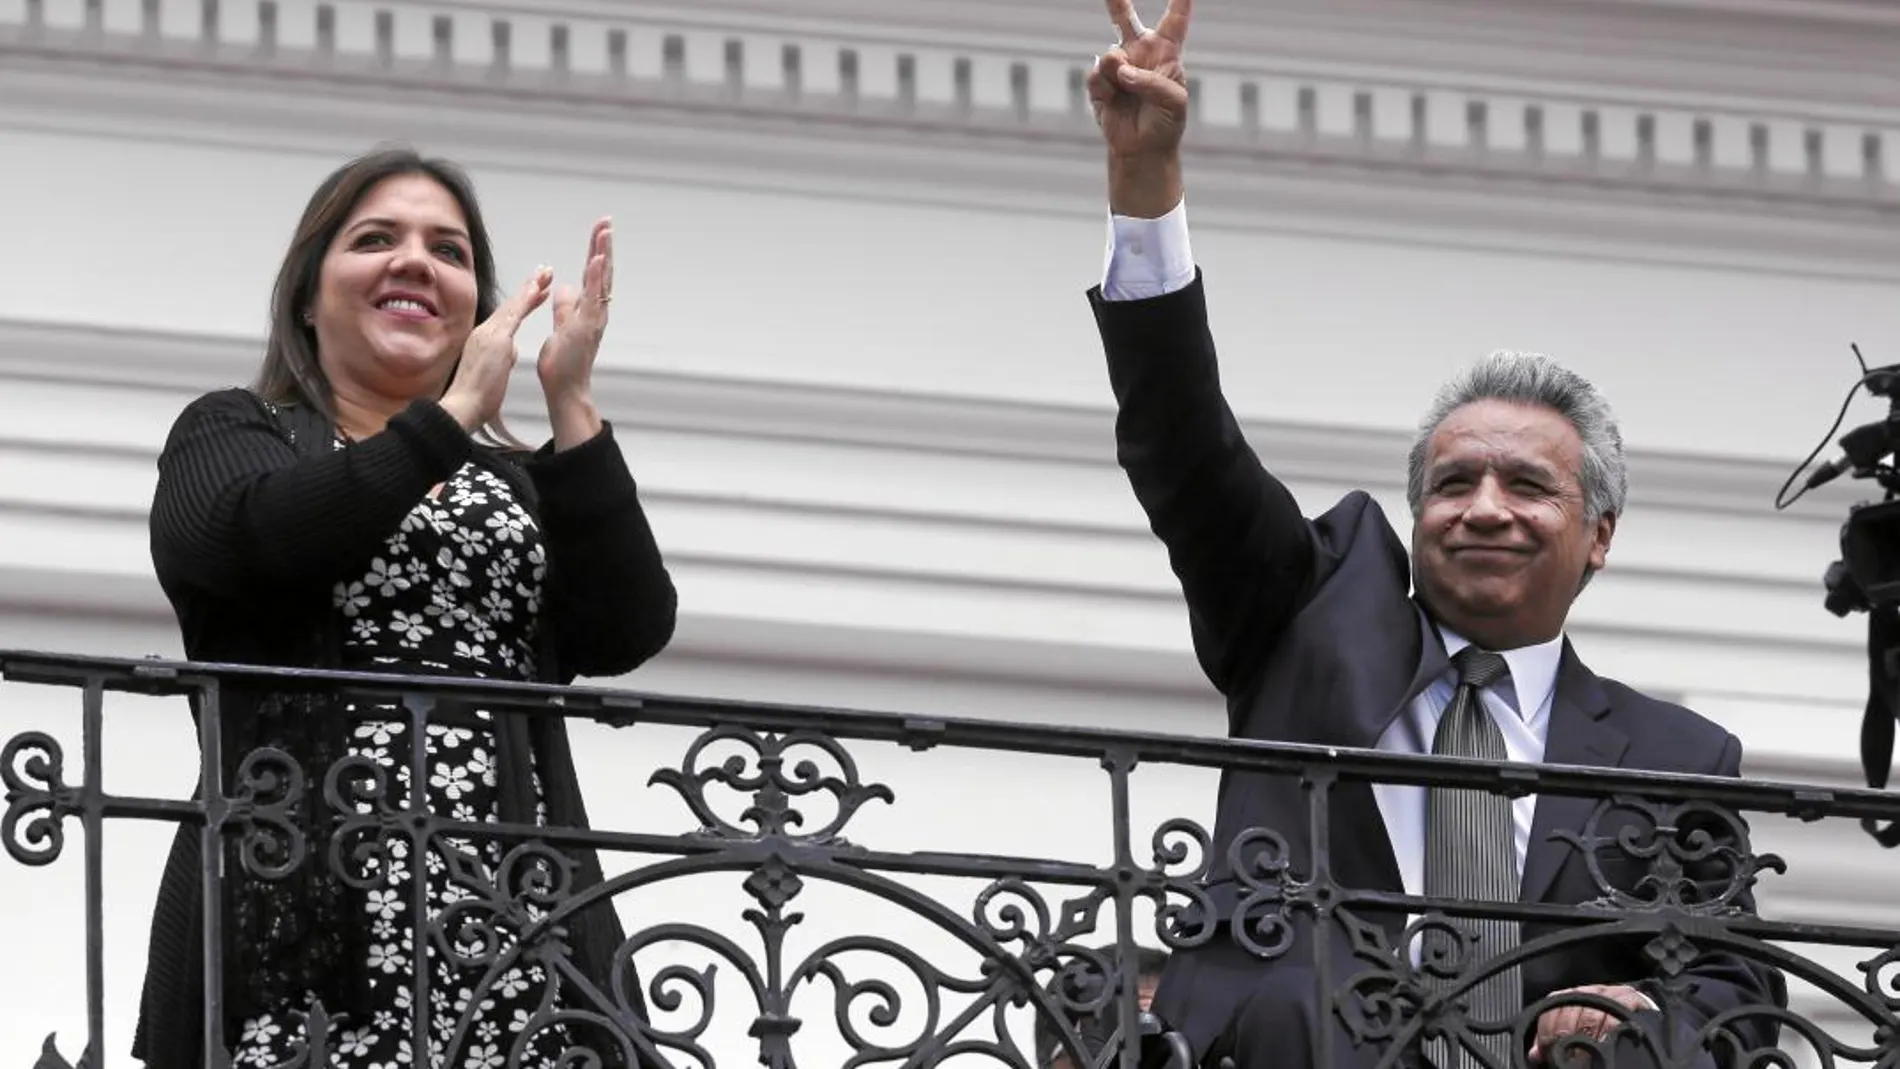 El presidente de Ecuador, Lenín Moreno, saluda a sus seguidores acompañado de la vicepresidenta María Alejandra Vicuña, tras vencer en la consulta